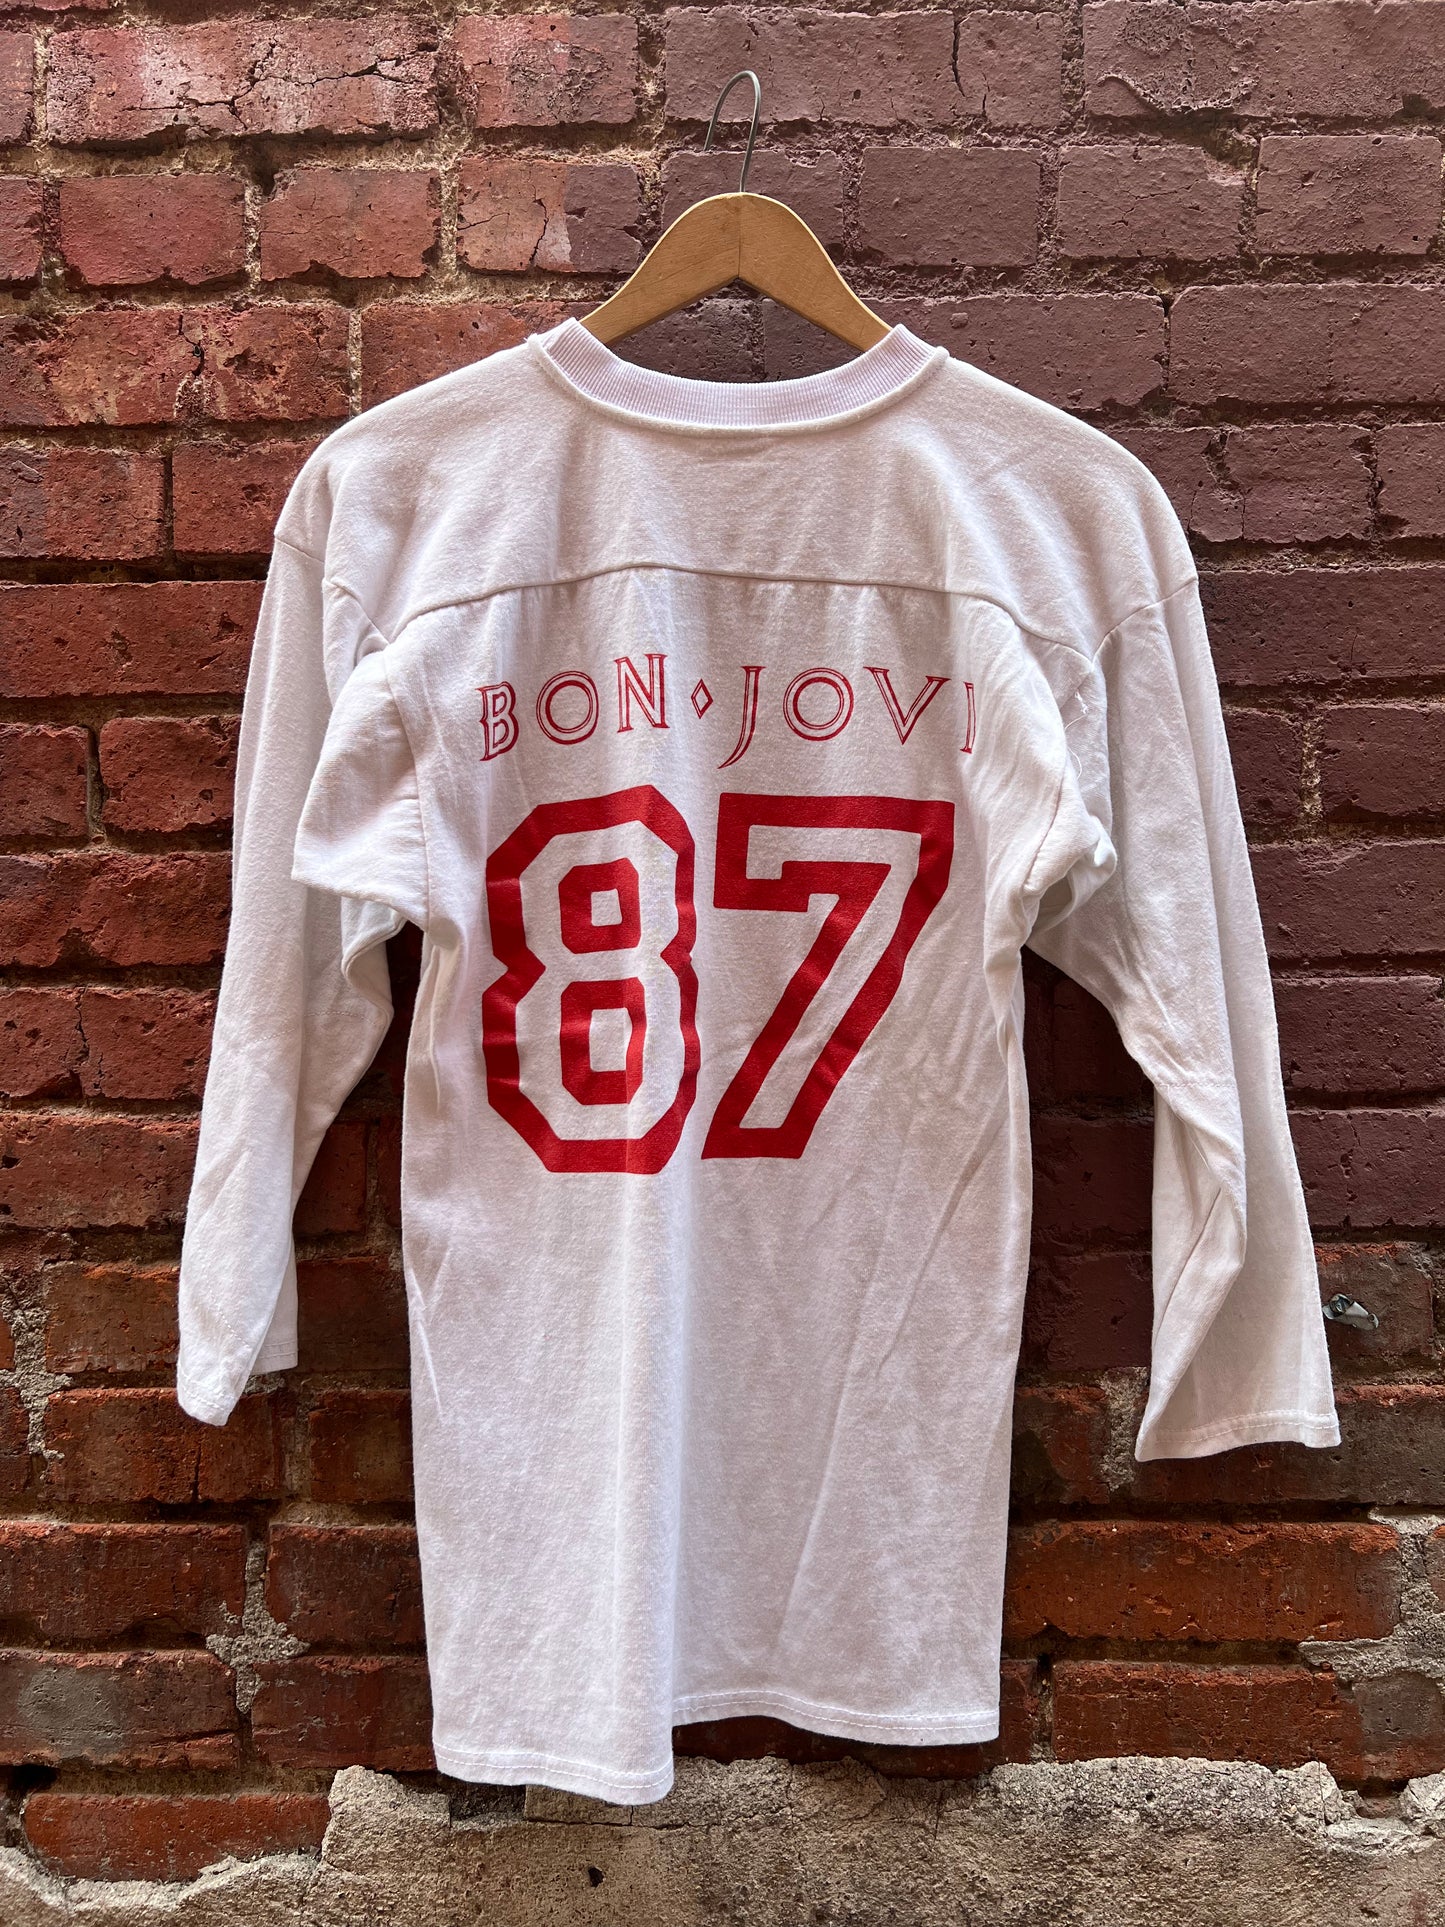 BON JOVI 1987 “Crew Member” Vintage Tour Shirt Nassau Coliseum - Size M